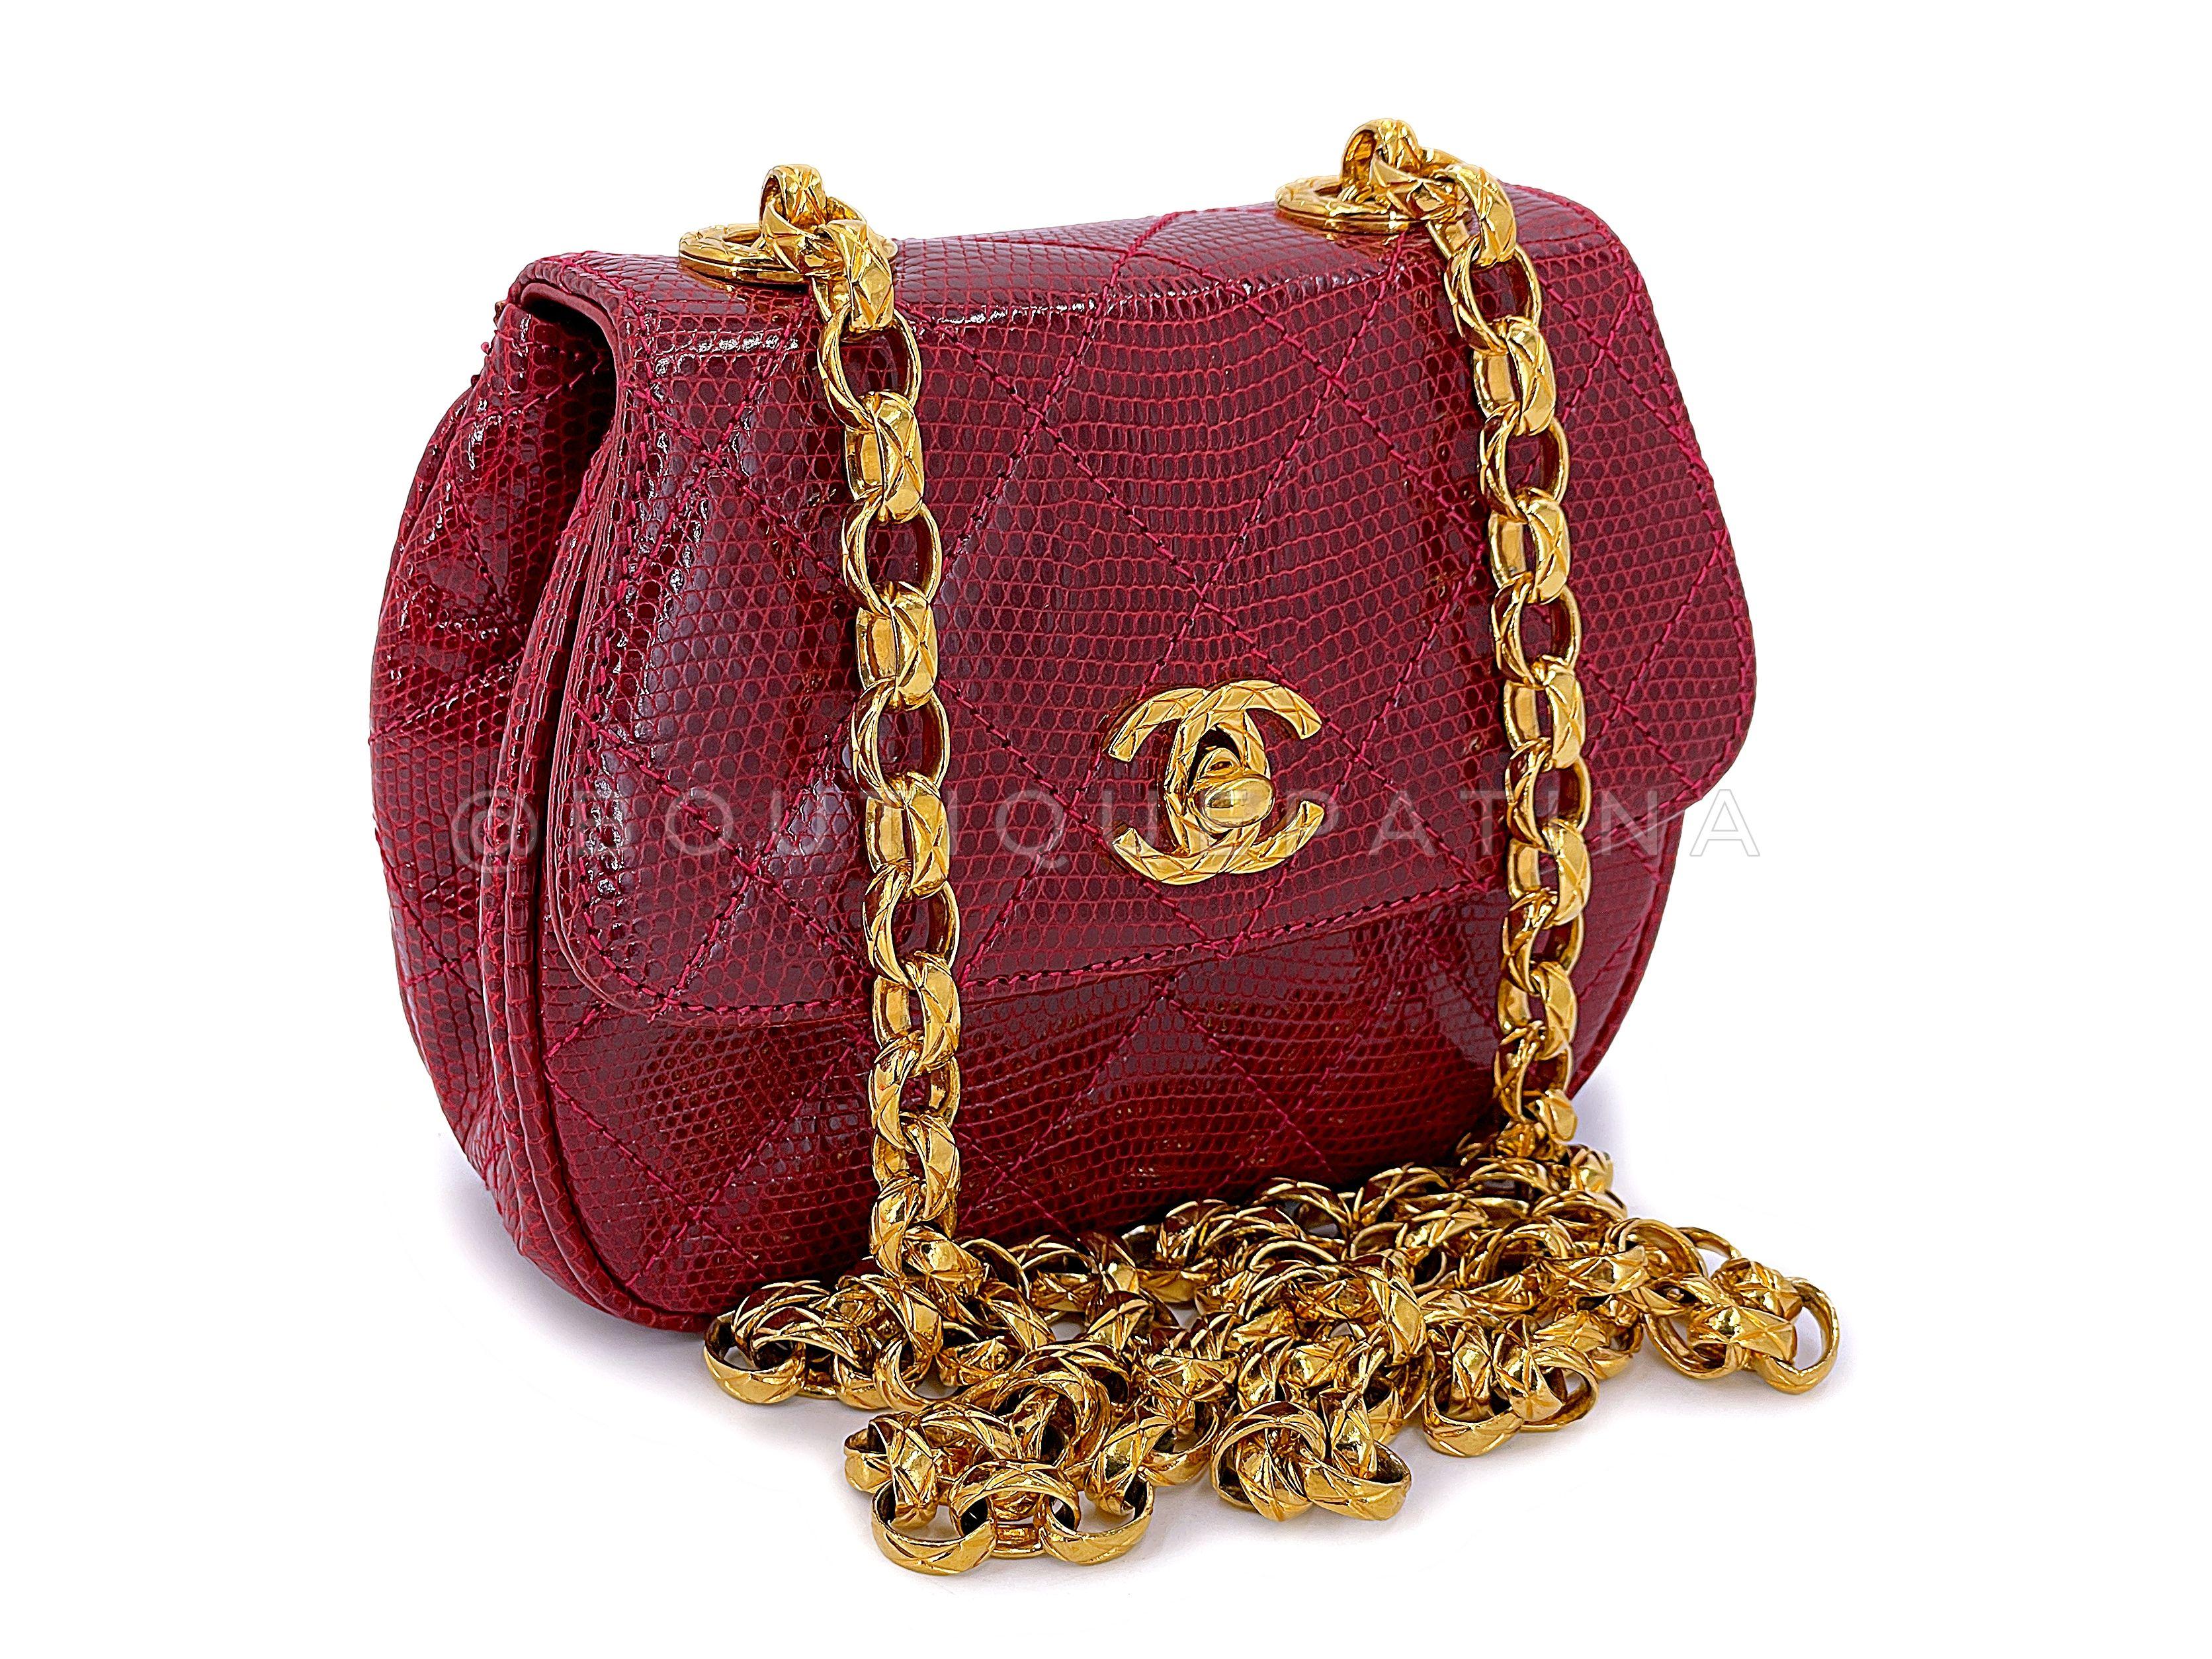 Article du magasin : 67290
Ce Rare Chanel 1980 Vintage Red Lizard Etched Chain Round Mini Flap Bag est une perle rare d'un sac - pour trop de raisons. 

Le cuir de lézard matelassé rouge est en parfait état, tout comme les passepoils latéraux et